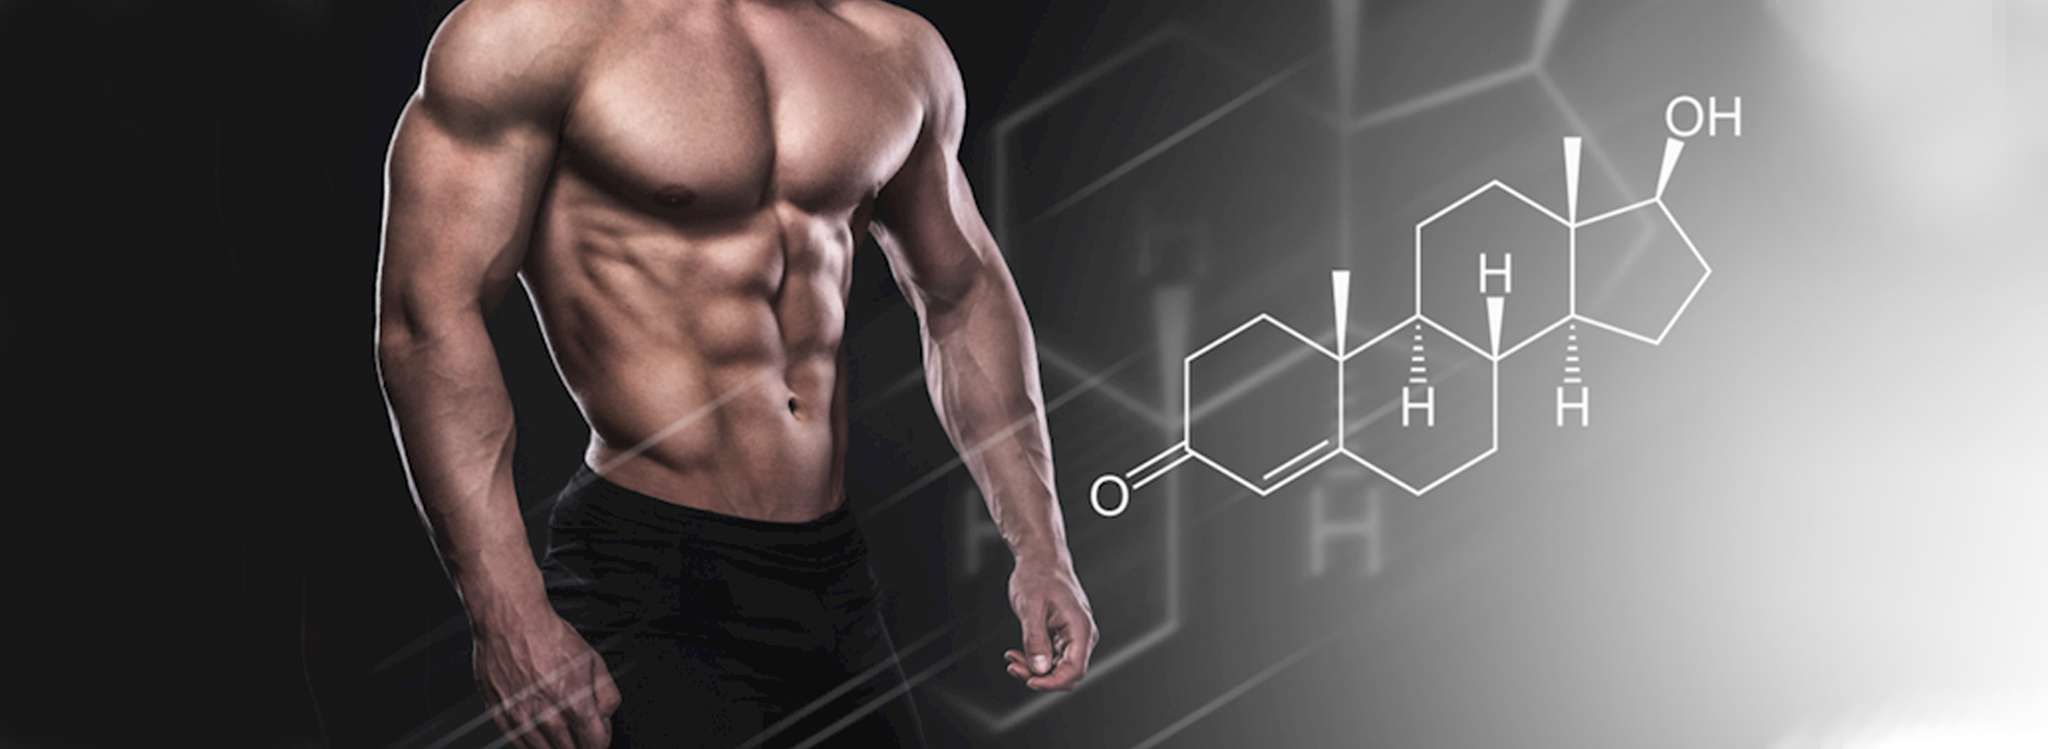 Steroid là gì ? Tác dụng phụ và rủi ro khi lạm dụng Steroid là gì? Thể hình Chanel sẽ giúp bạn trả lời thắc mắc này, Tham khảo ngay chi tiết của bài viết...